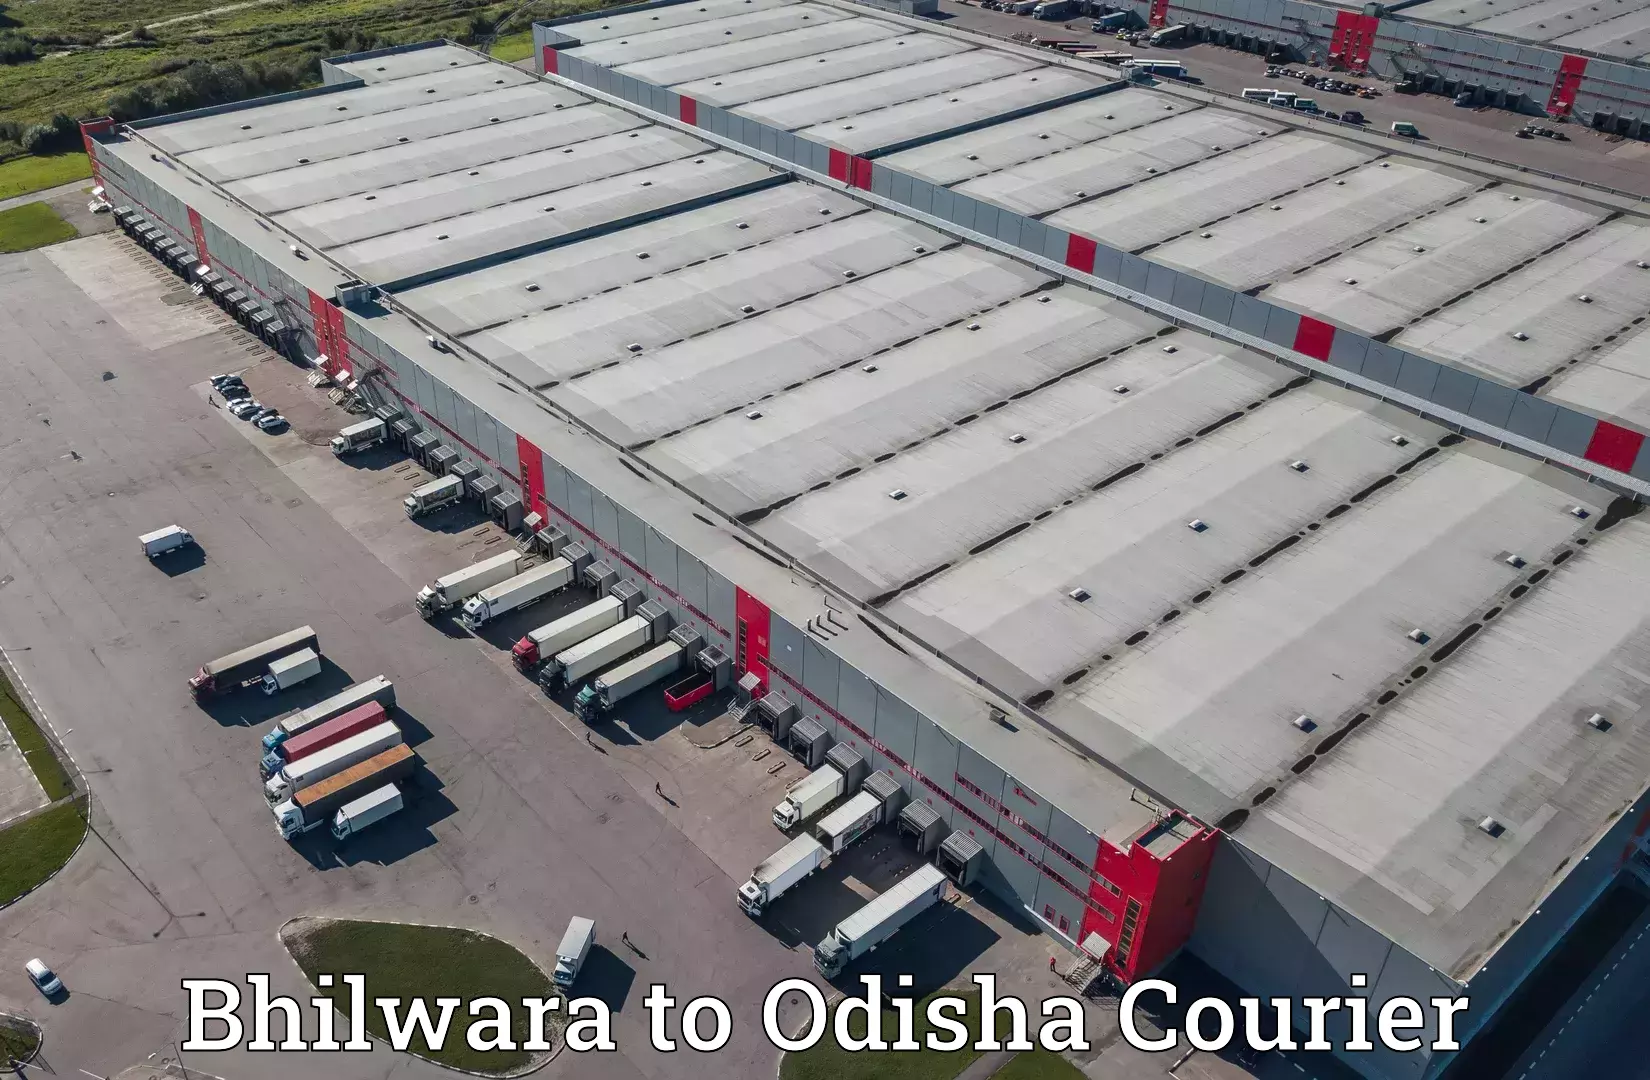 High-speed logistics services Bhilwara to Bheden